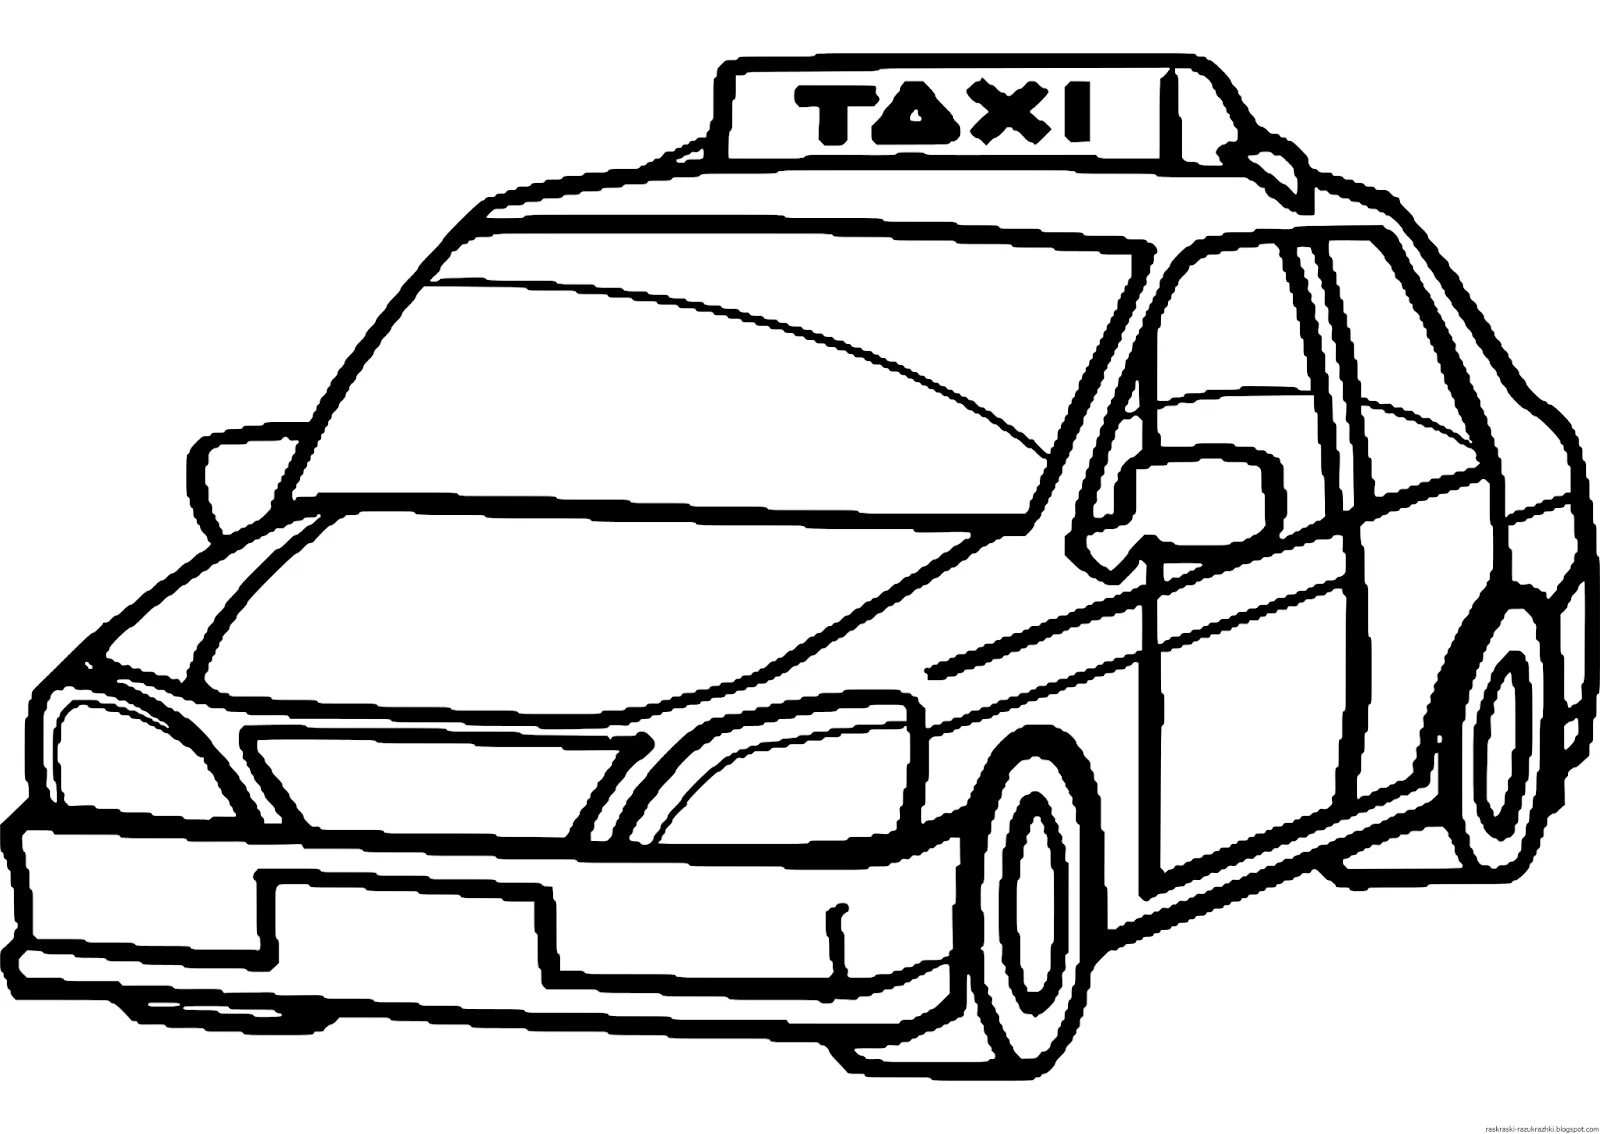 Taxi machine #4